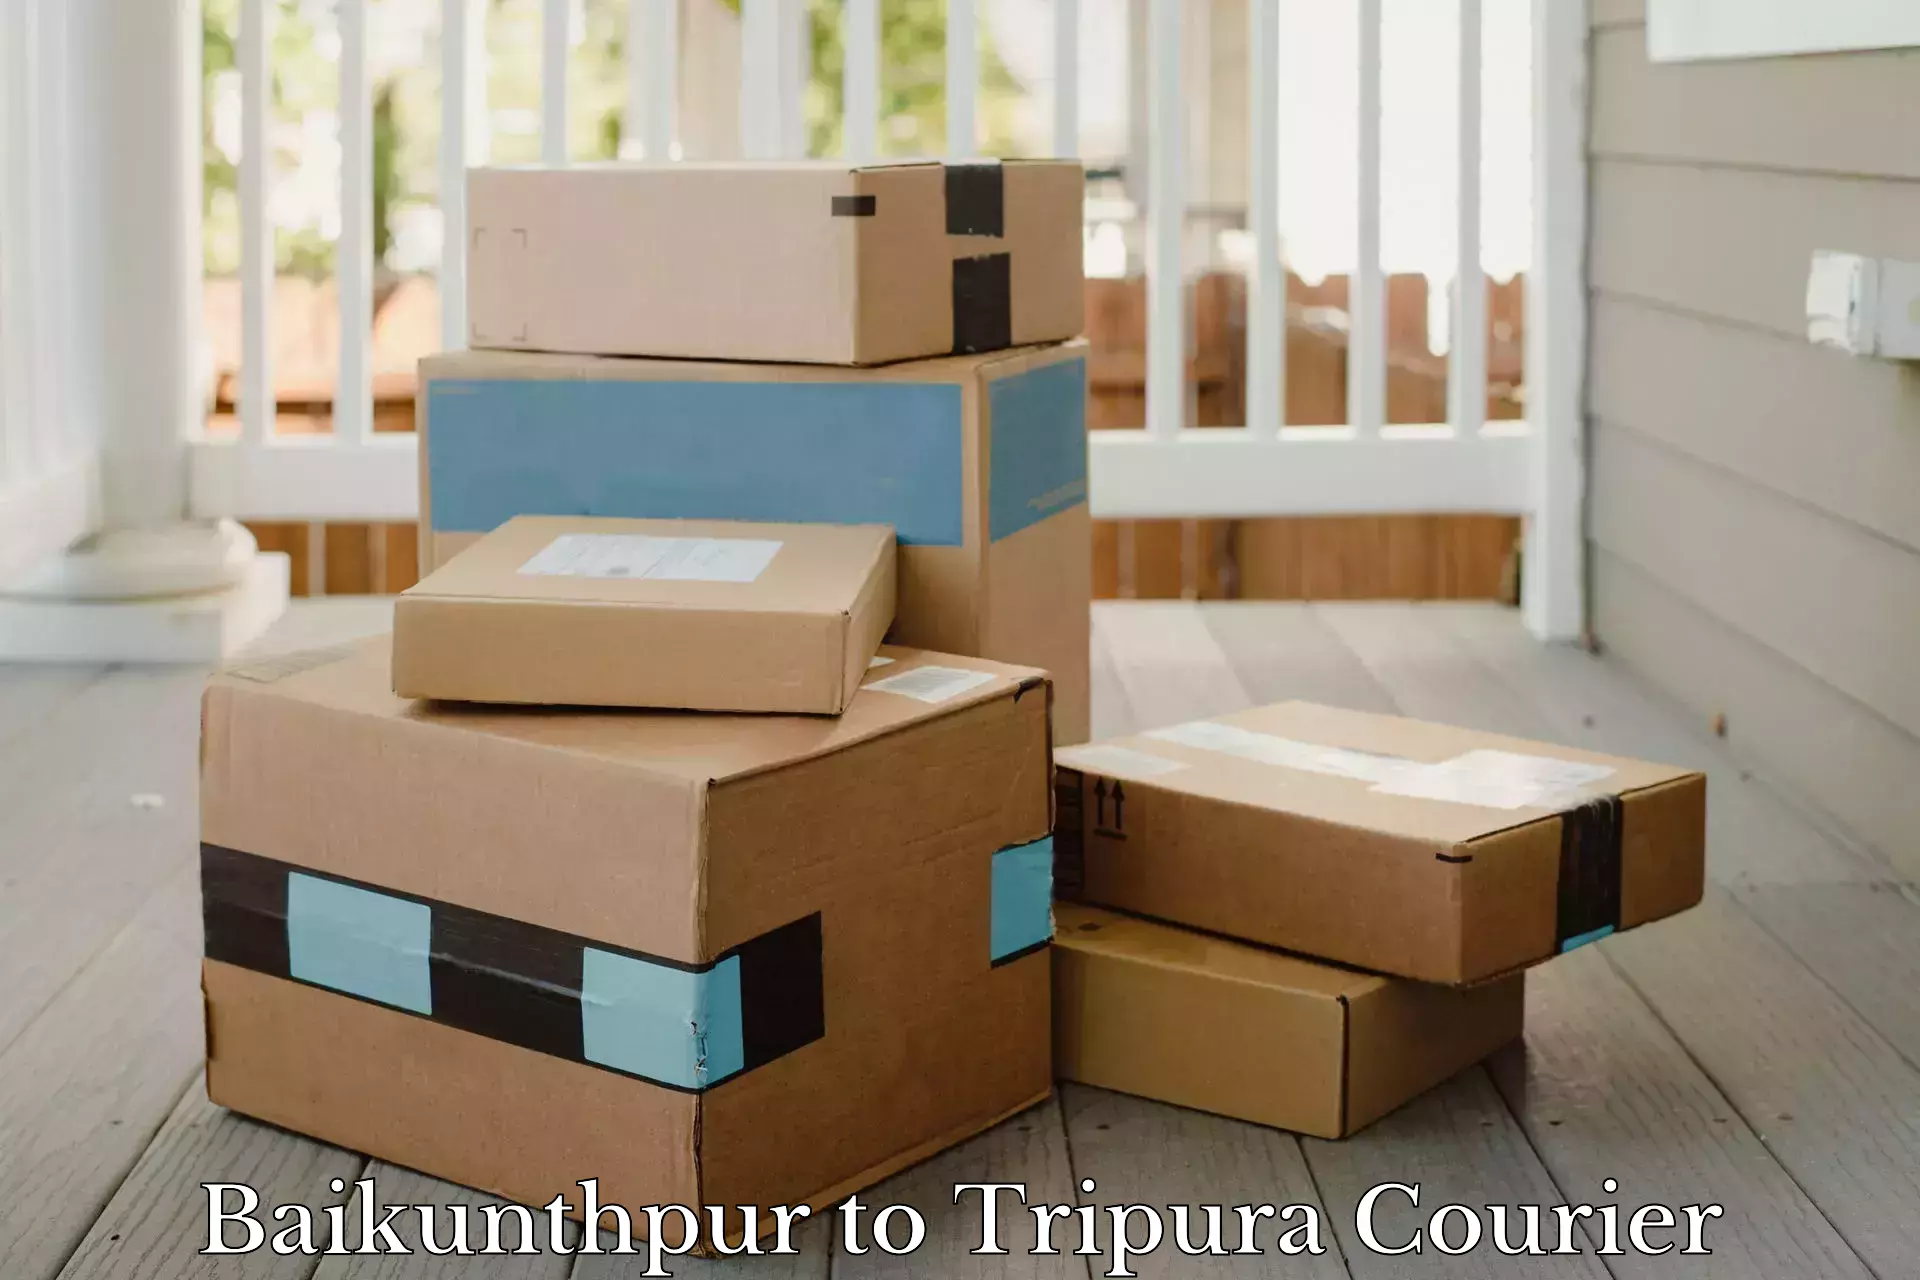 On-demand courier Baikunthpur to Dharmanagar